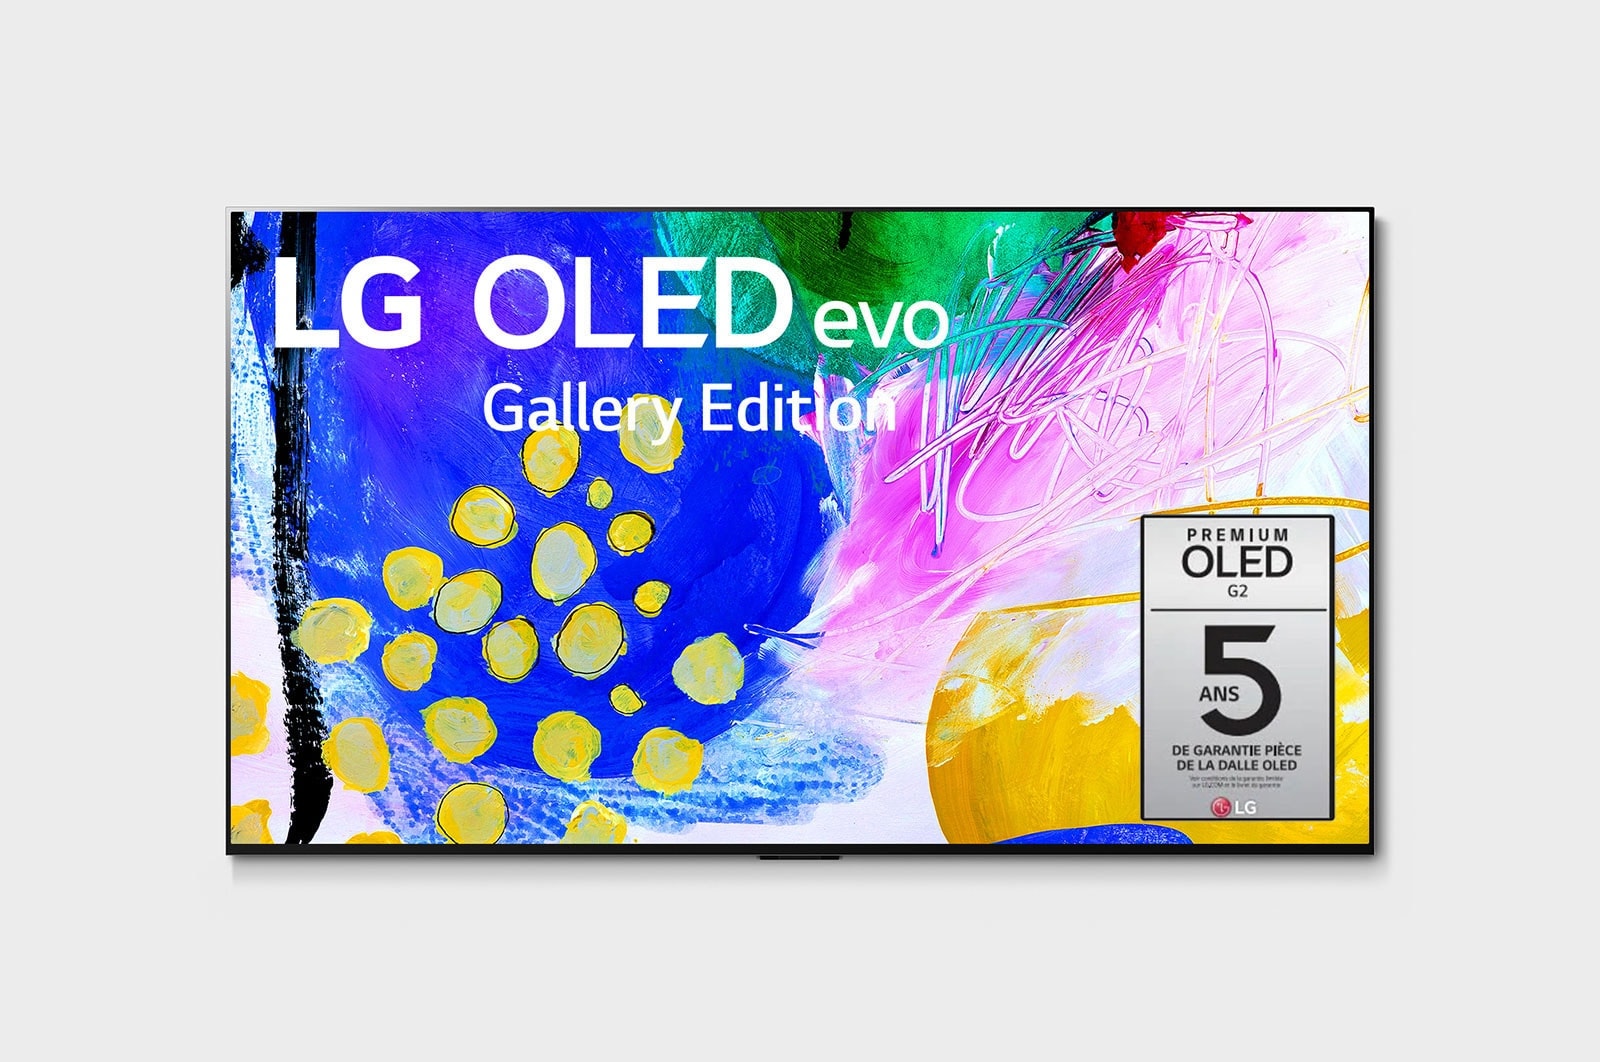 LG G2 evo Édition Gallery 97 pouces de LG, OLED97G2PUA